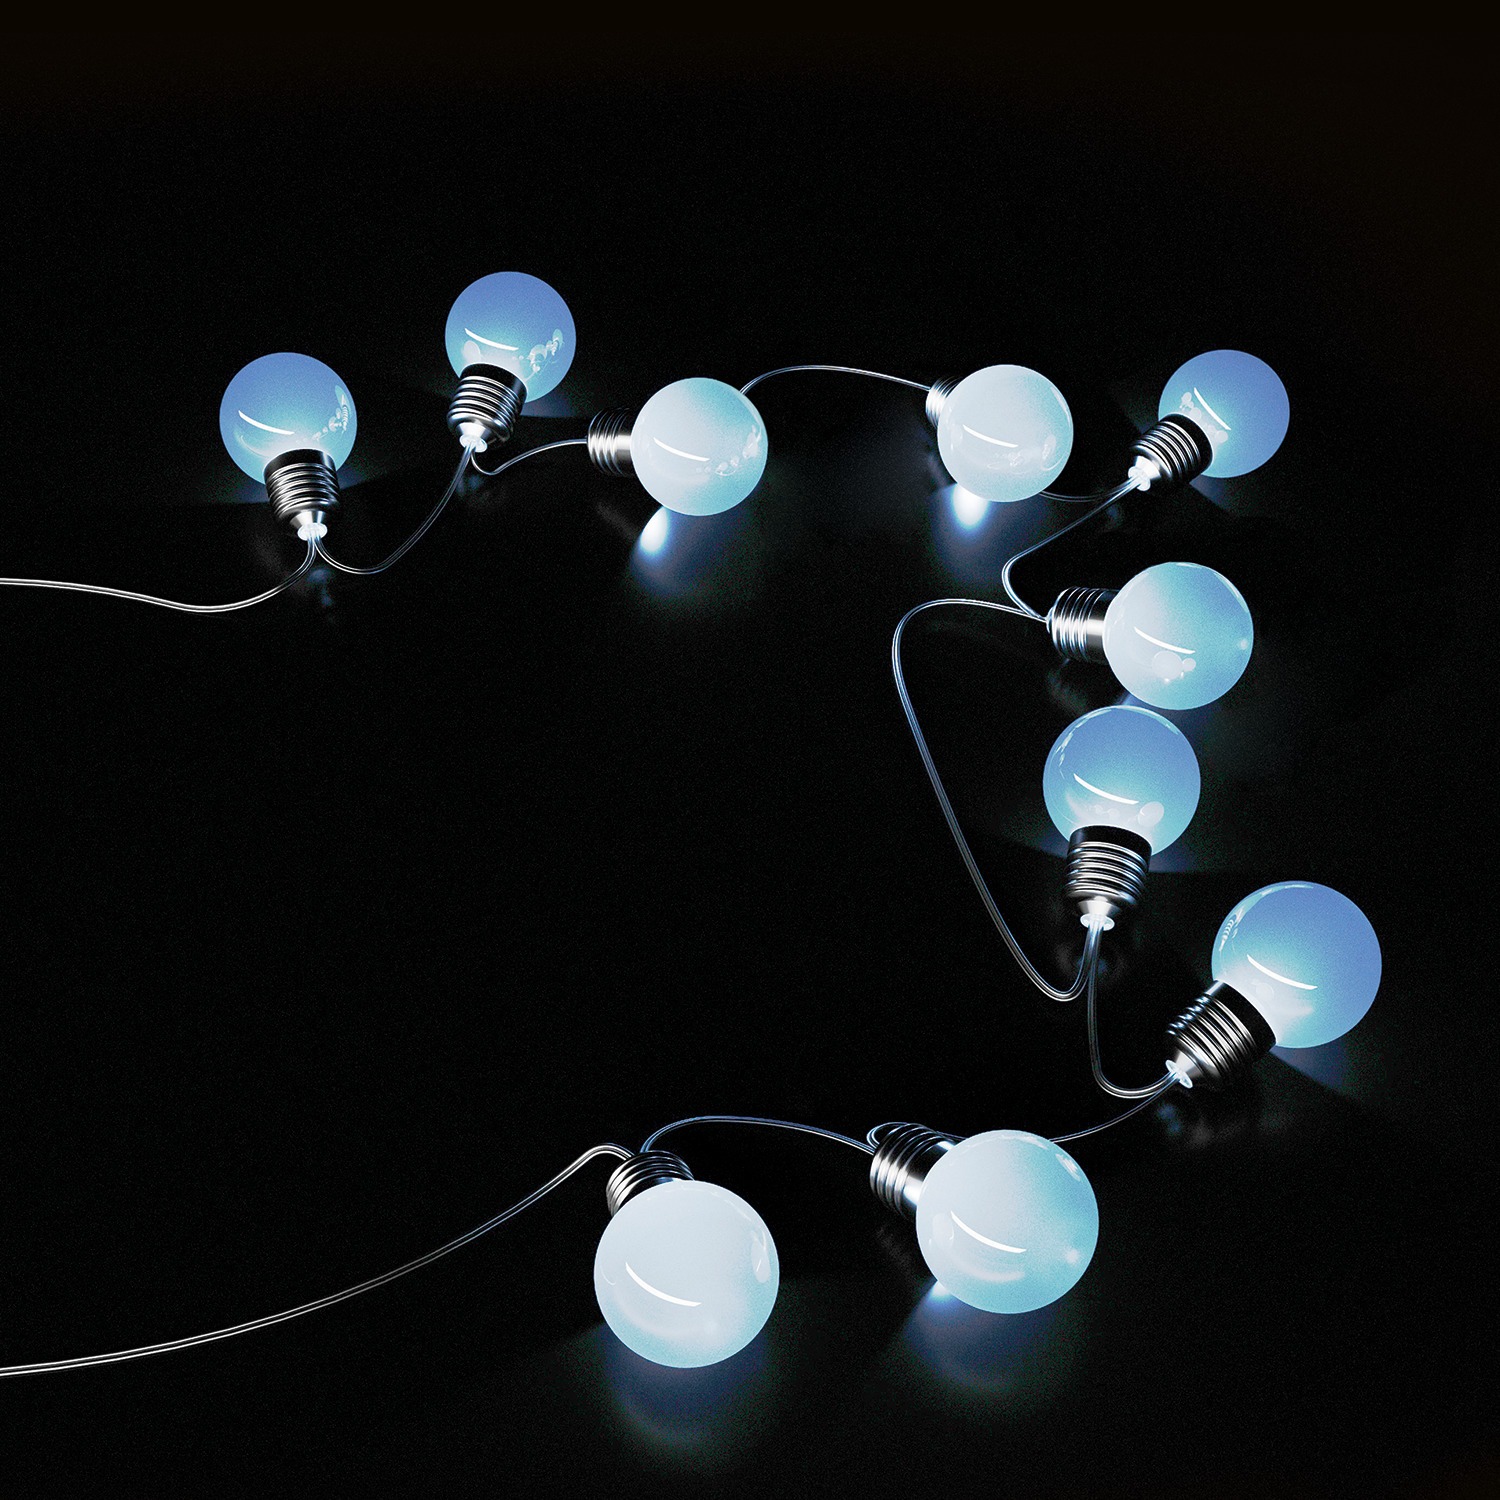 Гирлянда садовая на солнечной батарее Gauss 10 LED большие шары холодный белый свет 3,8 м, цвет черный - фото 2